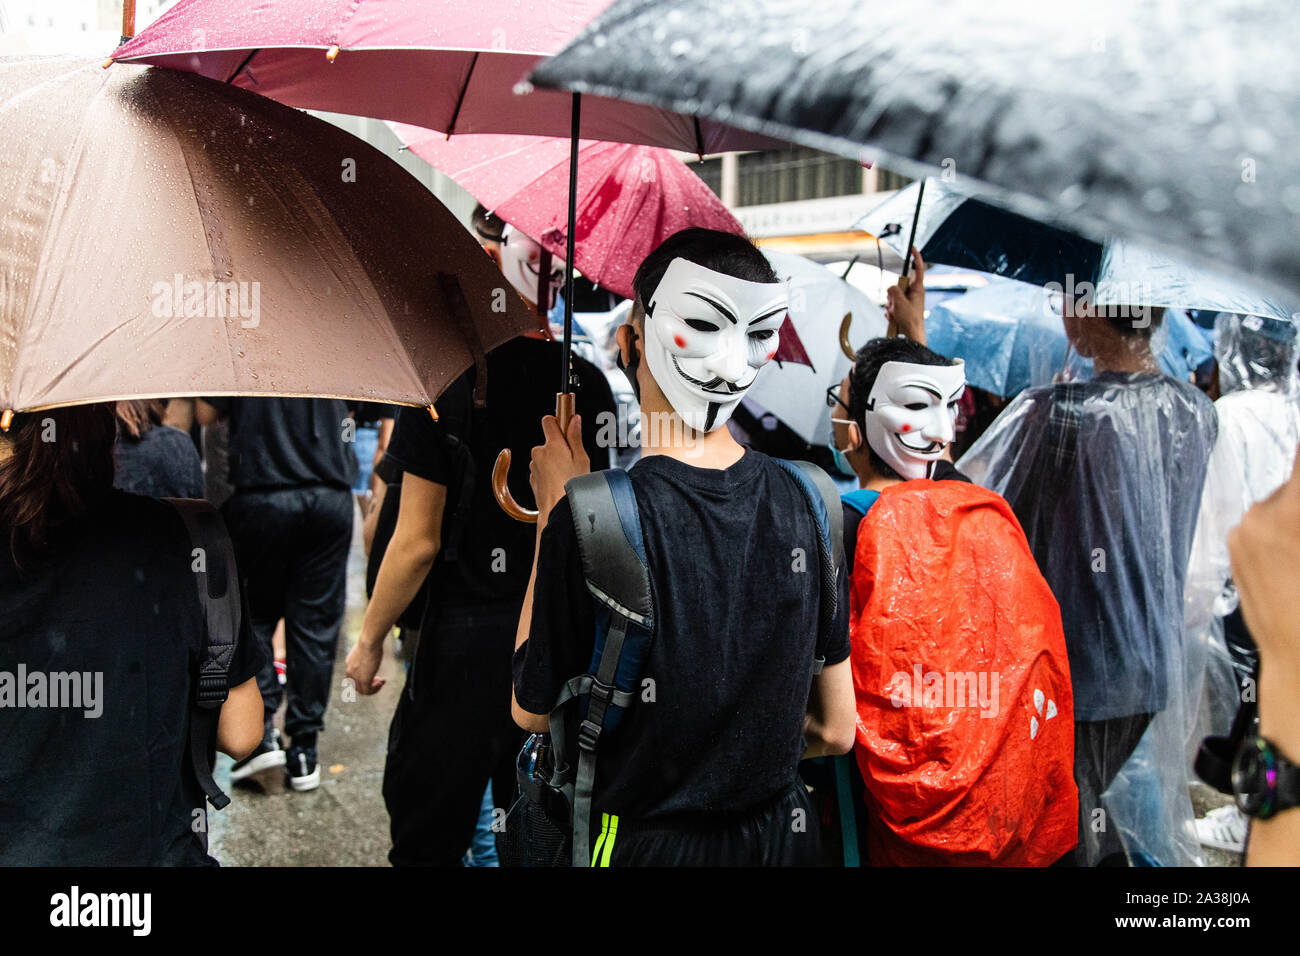 Porter des masques de Guy Fawkes manifestants pendant la manifestation.entrer dans le 18ème week-end d'agitation civile, les manifestants ont marché sous la pluie après un masque anti-loi a été adoptée dans le but d'empêcher les manifestations. Les manifestants scandaient des slogans et continué de solliciter de la cinq exigences à satisfaire. Manifestants ont affronté la police anti-émeute et ont été frappés avec des gaz lacrymogènes, des balles en caoutchouc, et un canon à eau jusqu'à ce que plusieurs ont finalement été arrêtés. Banque D'Images